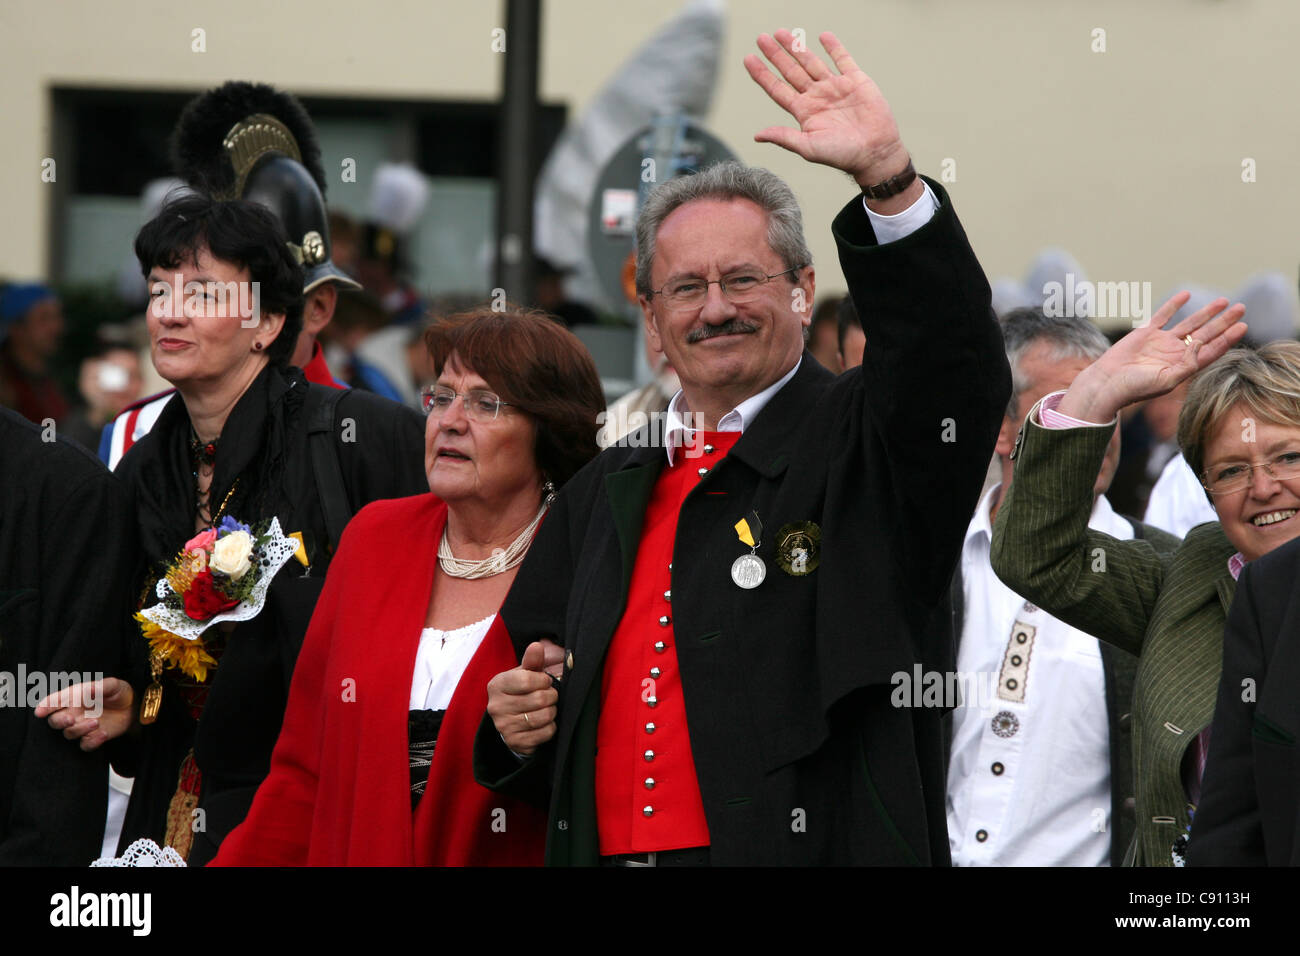 Il sindaco di Monaco Christian Ude e sua moglie Edith von Welser-Ude assistere alla cerimonia di apertura dell'Oktoberfest. Foto Stock